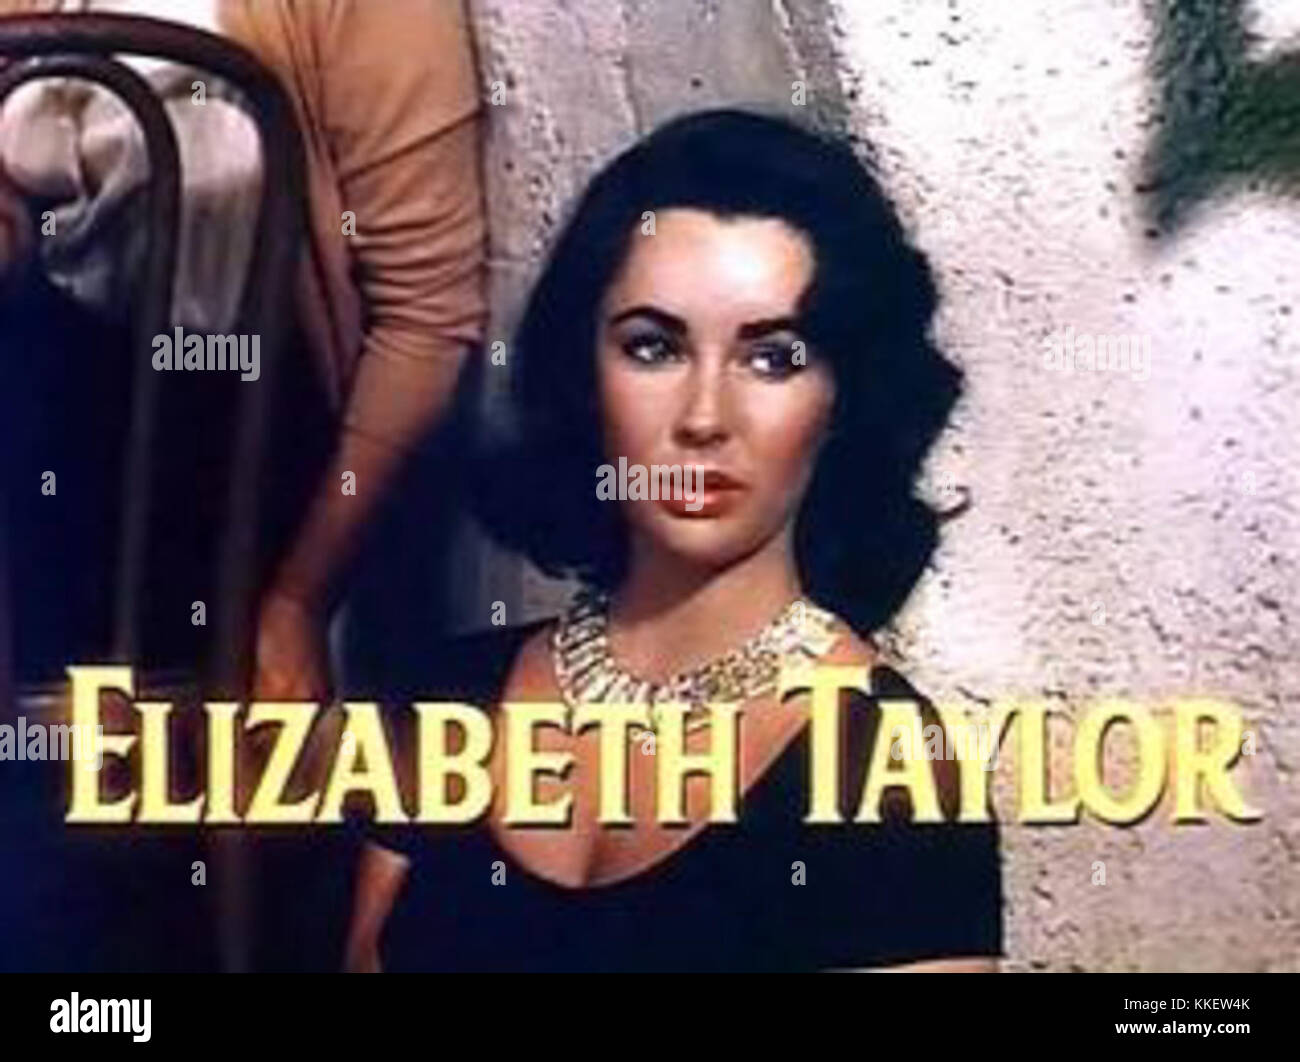 Elizabeth Taylor nell'ultima volta ho visto il trailer di Parigi Foto Stock